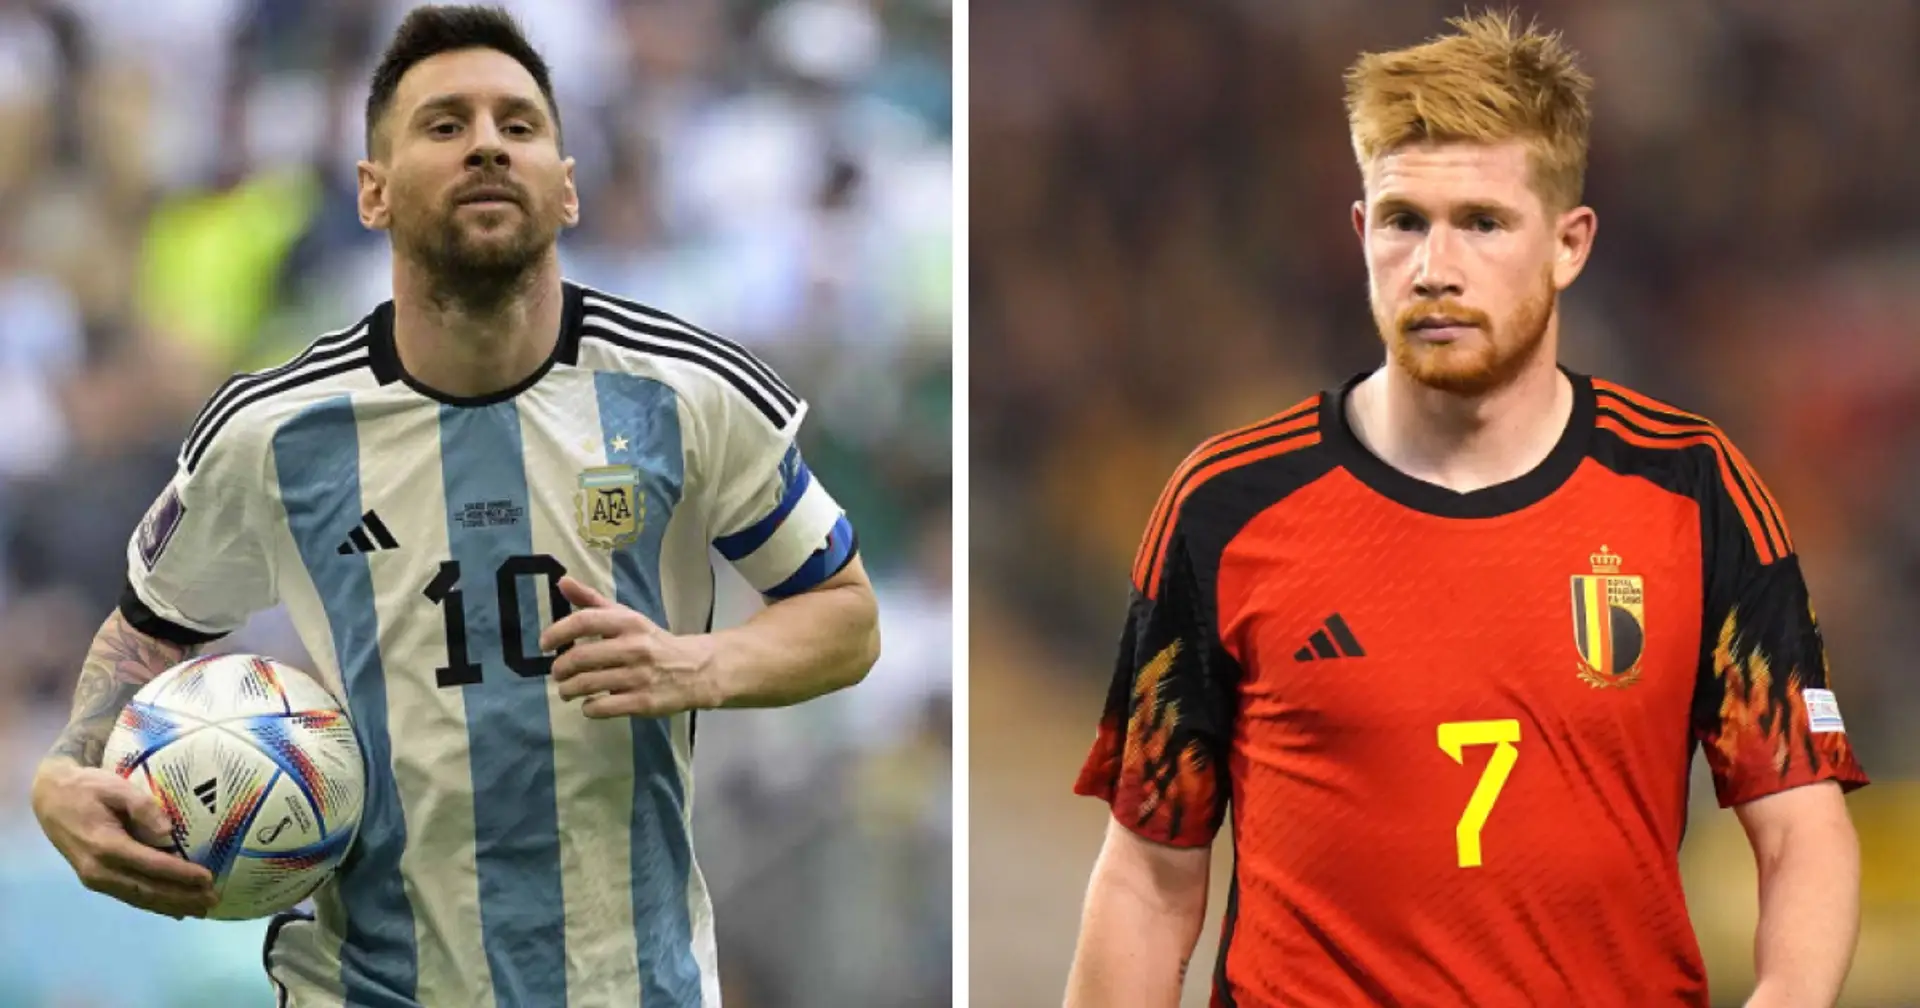 Un nome a sorpresa nella lista dei migliori assist-man internazionali: Messi è solo 3°